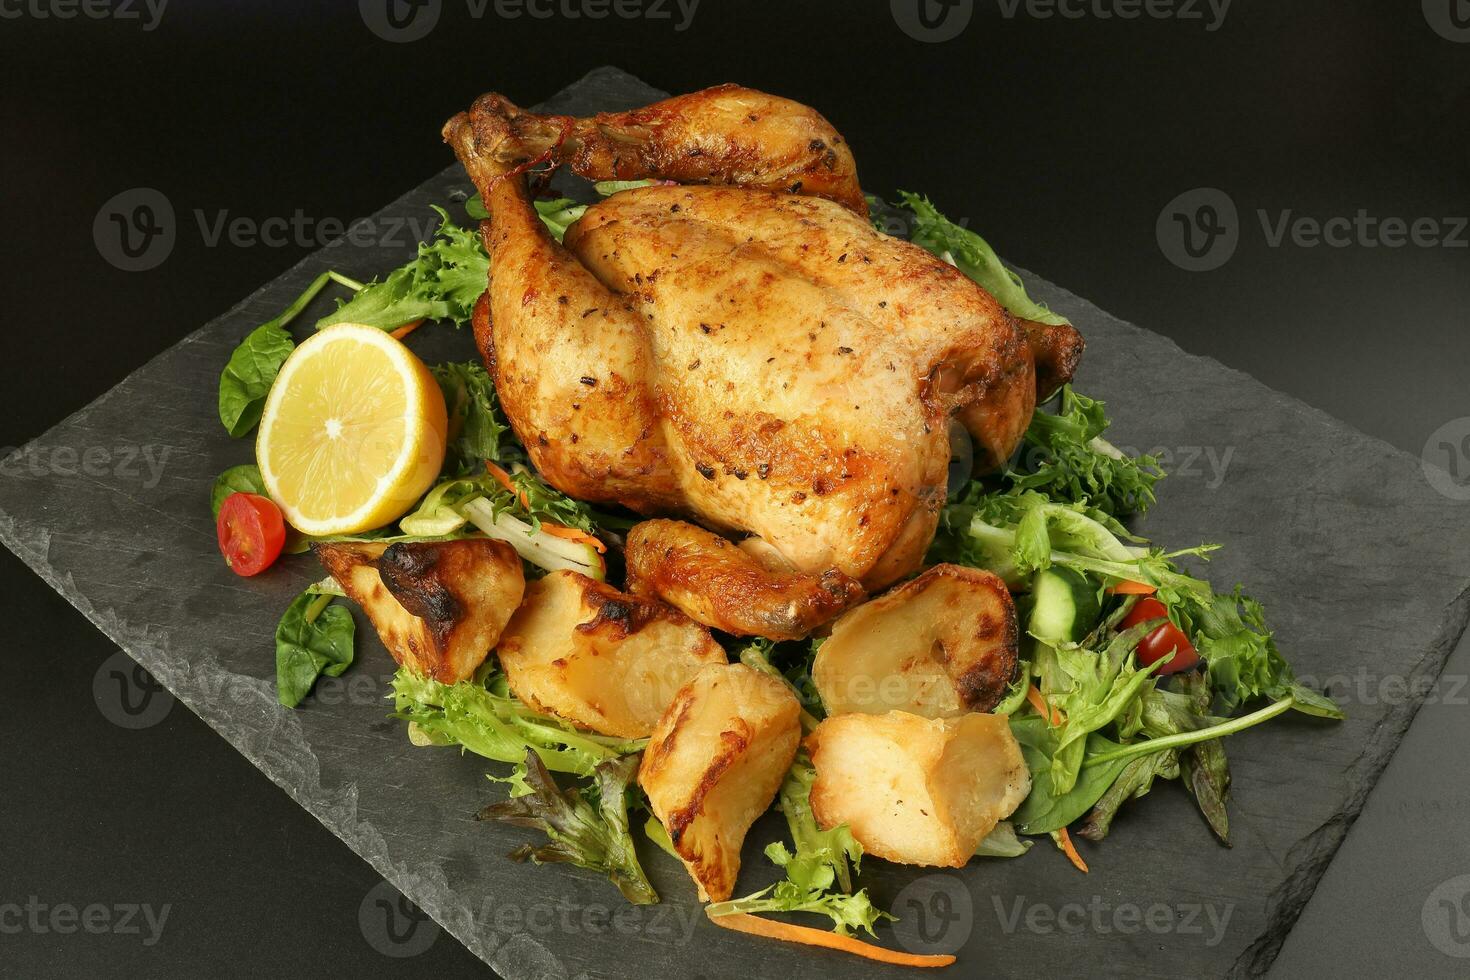 geheel geroosterd gegrild kip gevogelte vogel met gebakken aardappel groente salade tomaat citroen Aan zwart leisteen steen snijdend bord zwart achtergrond foto